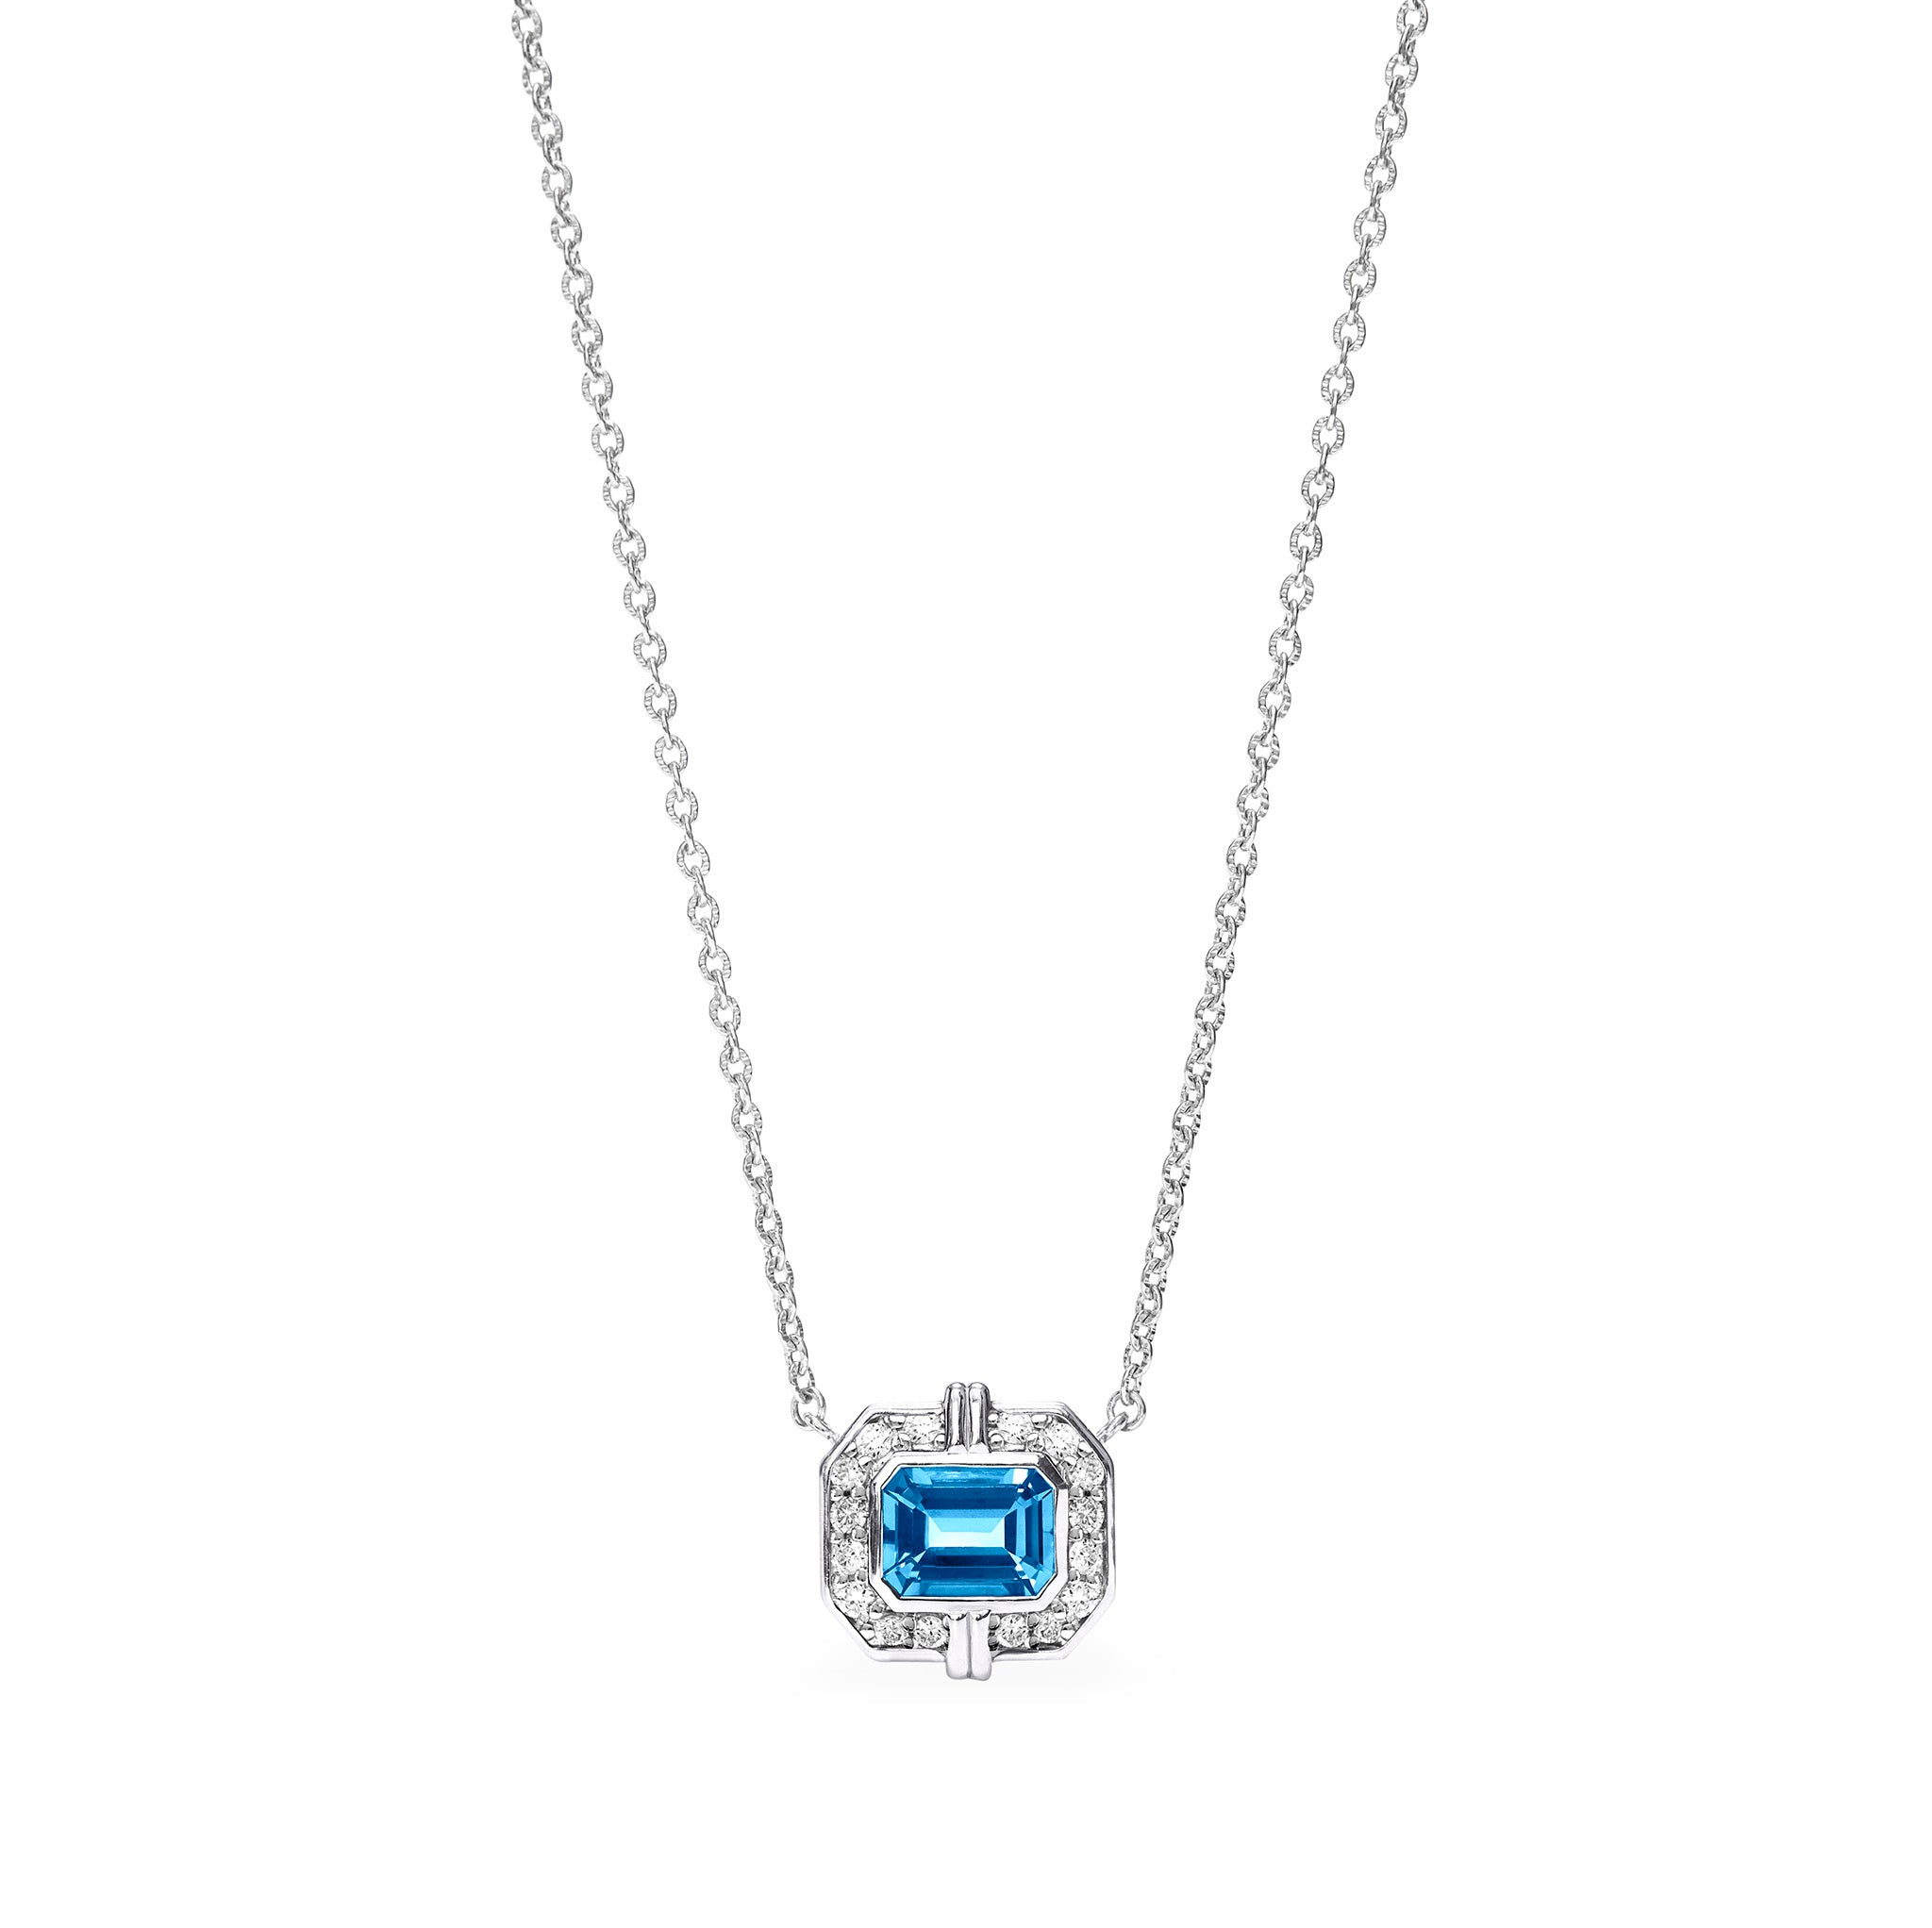 Adrienne Necklace With Swiss Blue Topaz And Diamonds